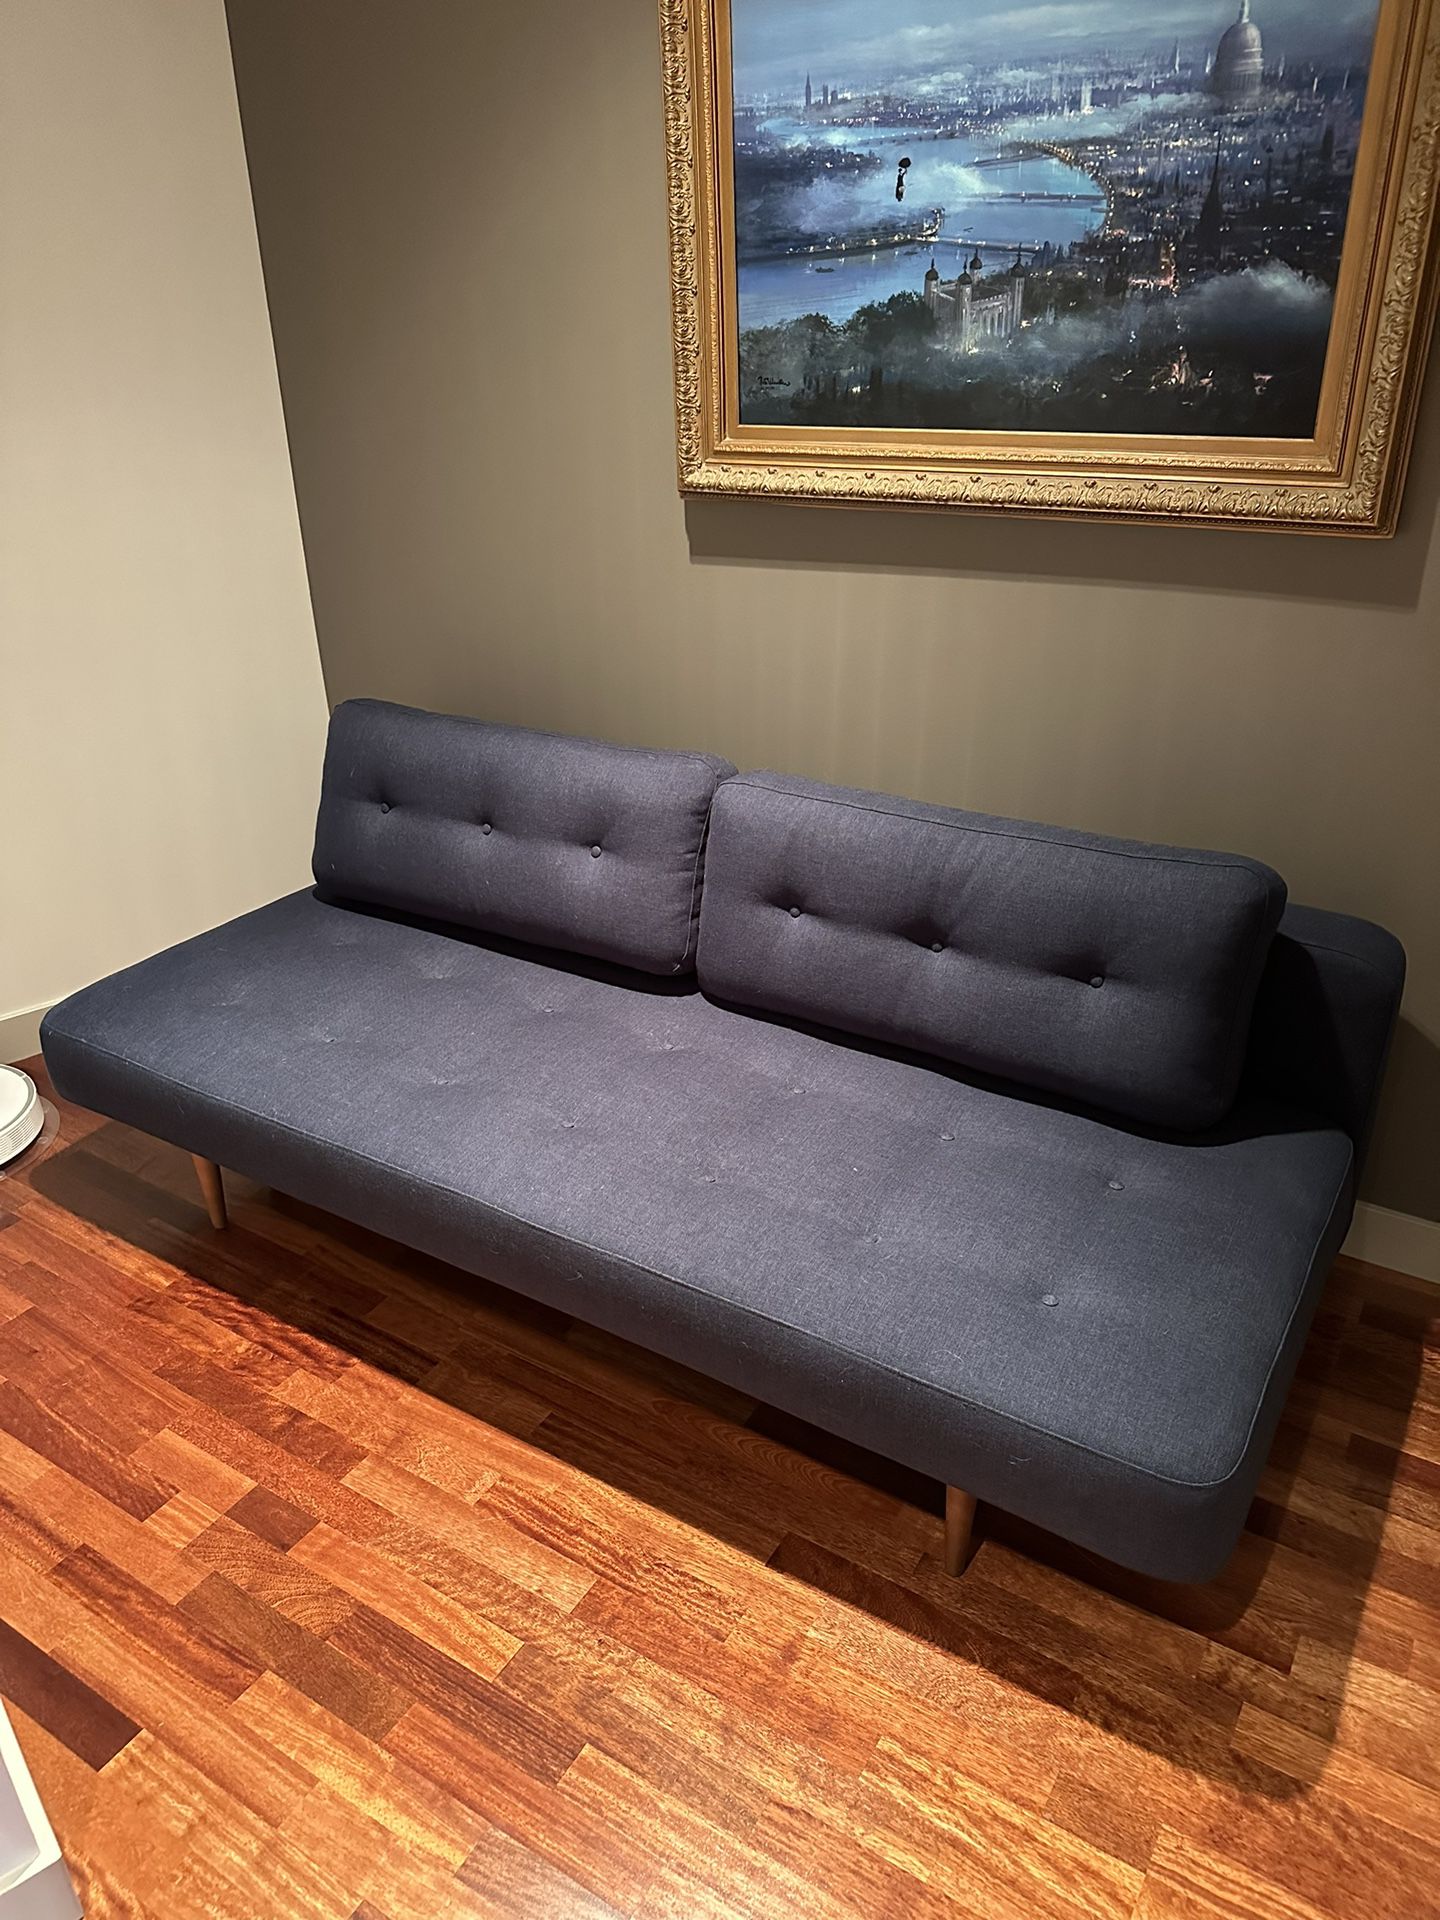 Room & Board Deco Convertible Sleeper Sofa